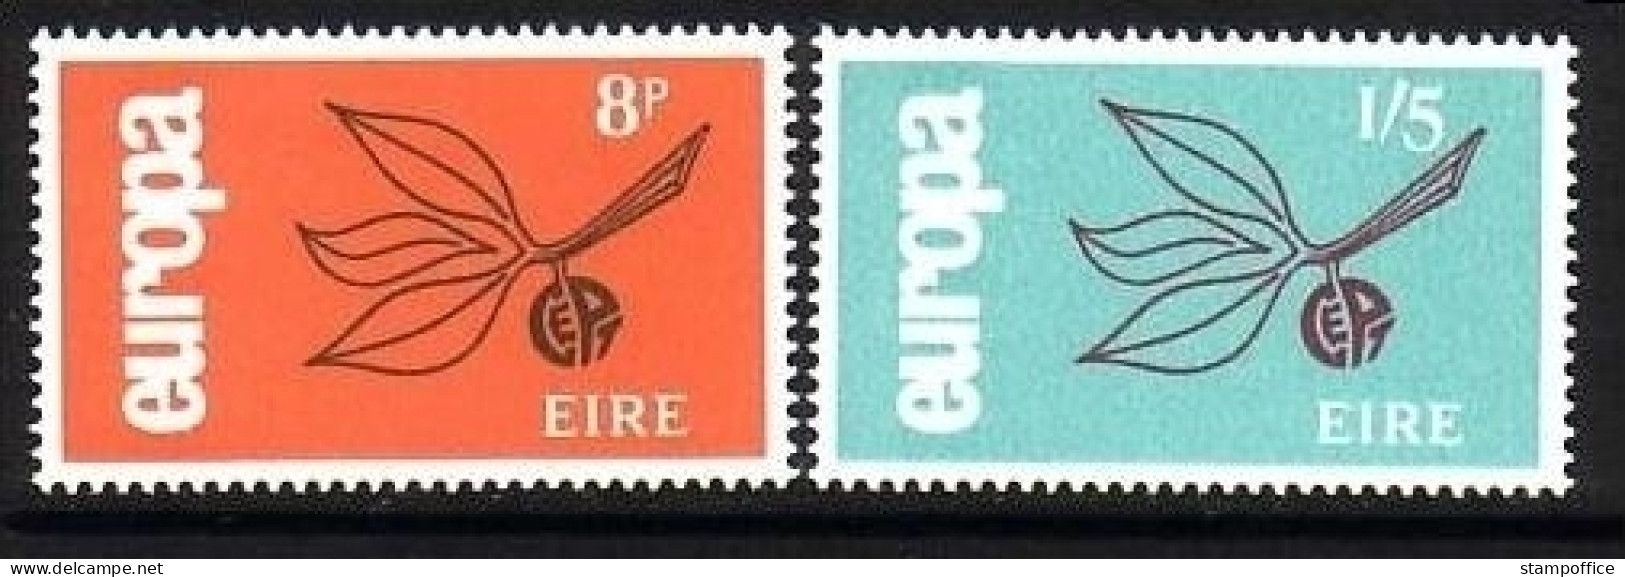 IRLAND MI-NR. 176-177 POSTFRISCH(MINT) EUROPA 1965 - ZWEIG - 1965